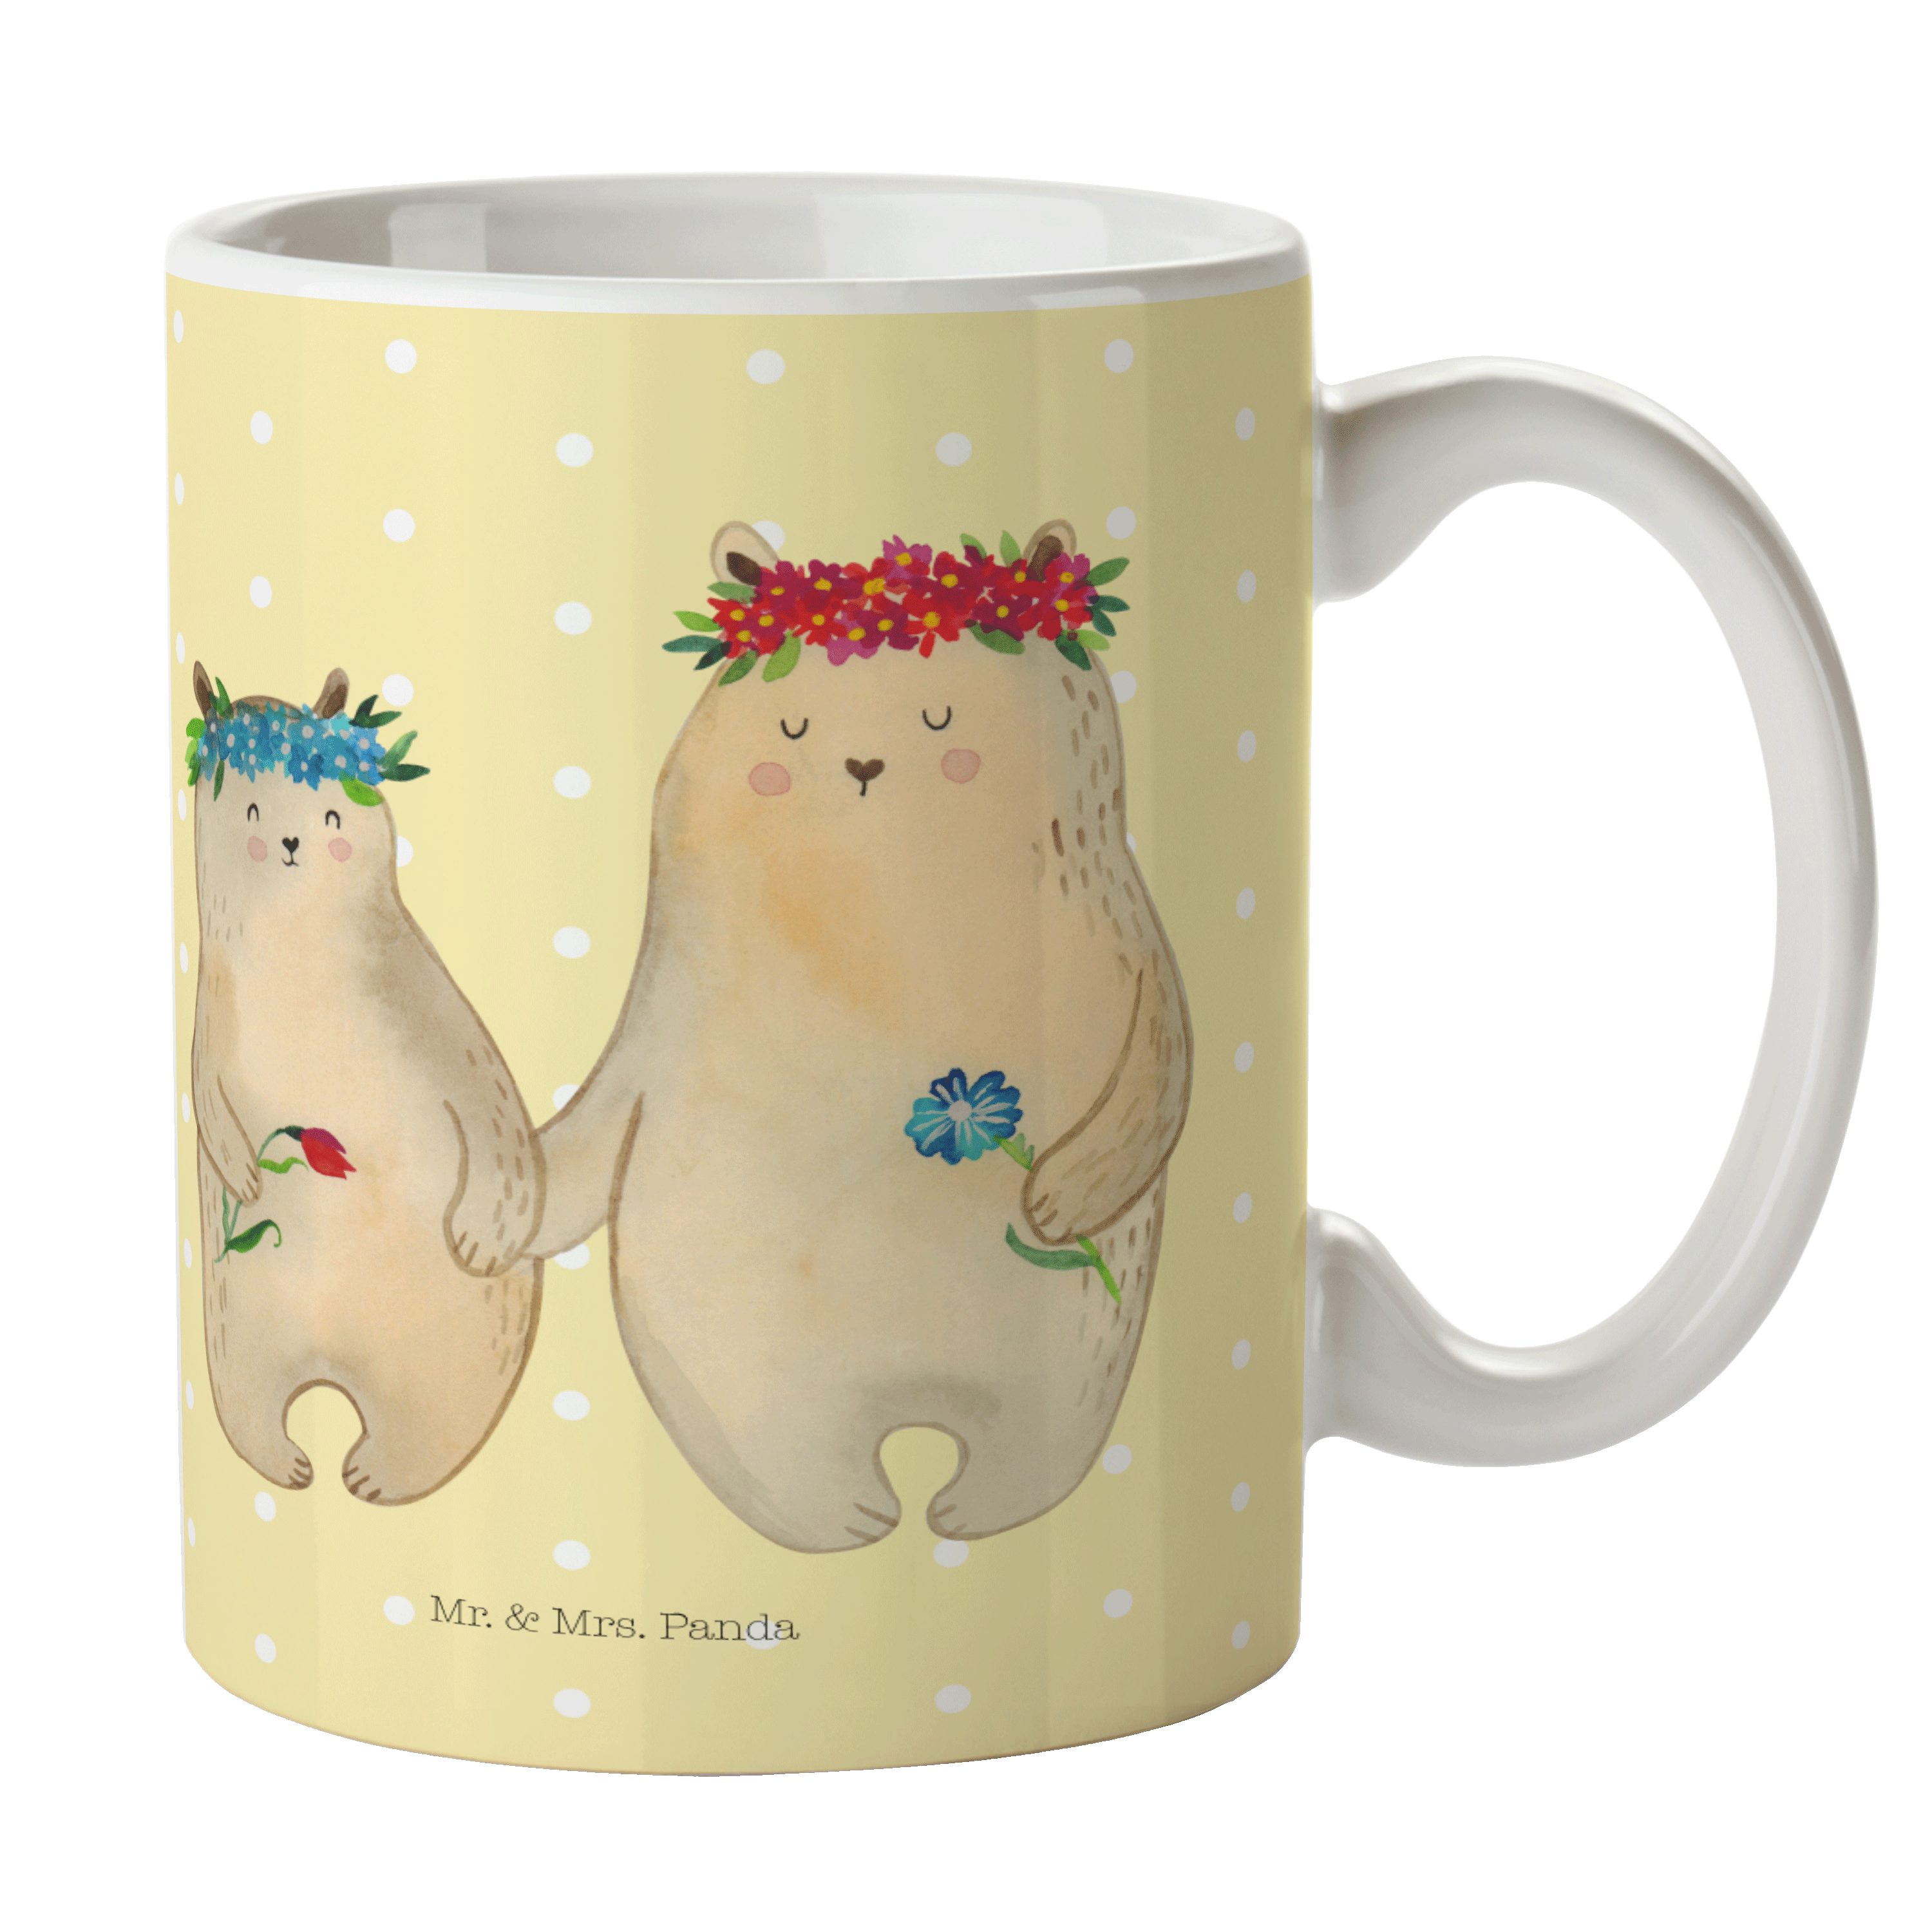 Mr. & Mrs. Panda Tasse Bären mit Blumenkranz - Gelb Pastell - Geschenk, beste Freundin, Schw, Keramik